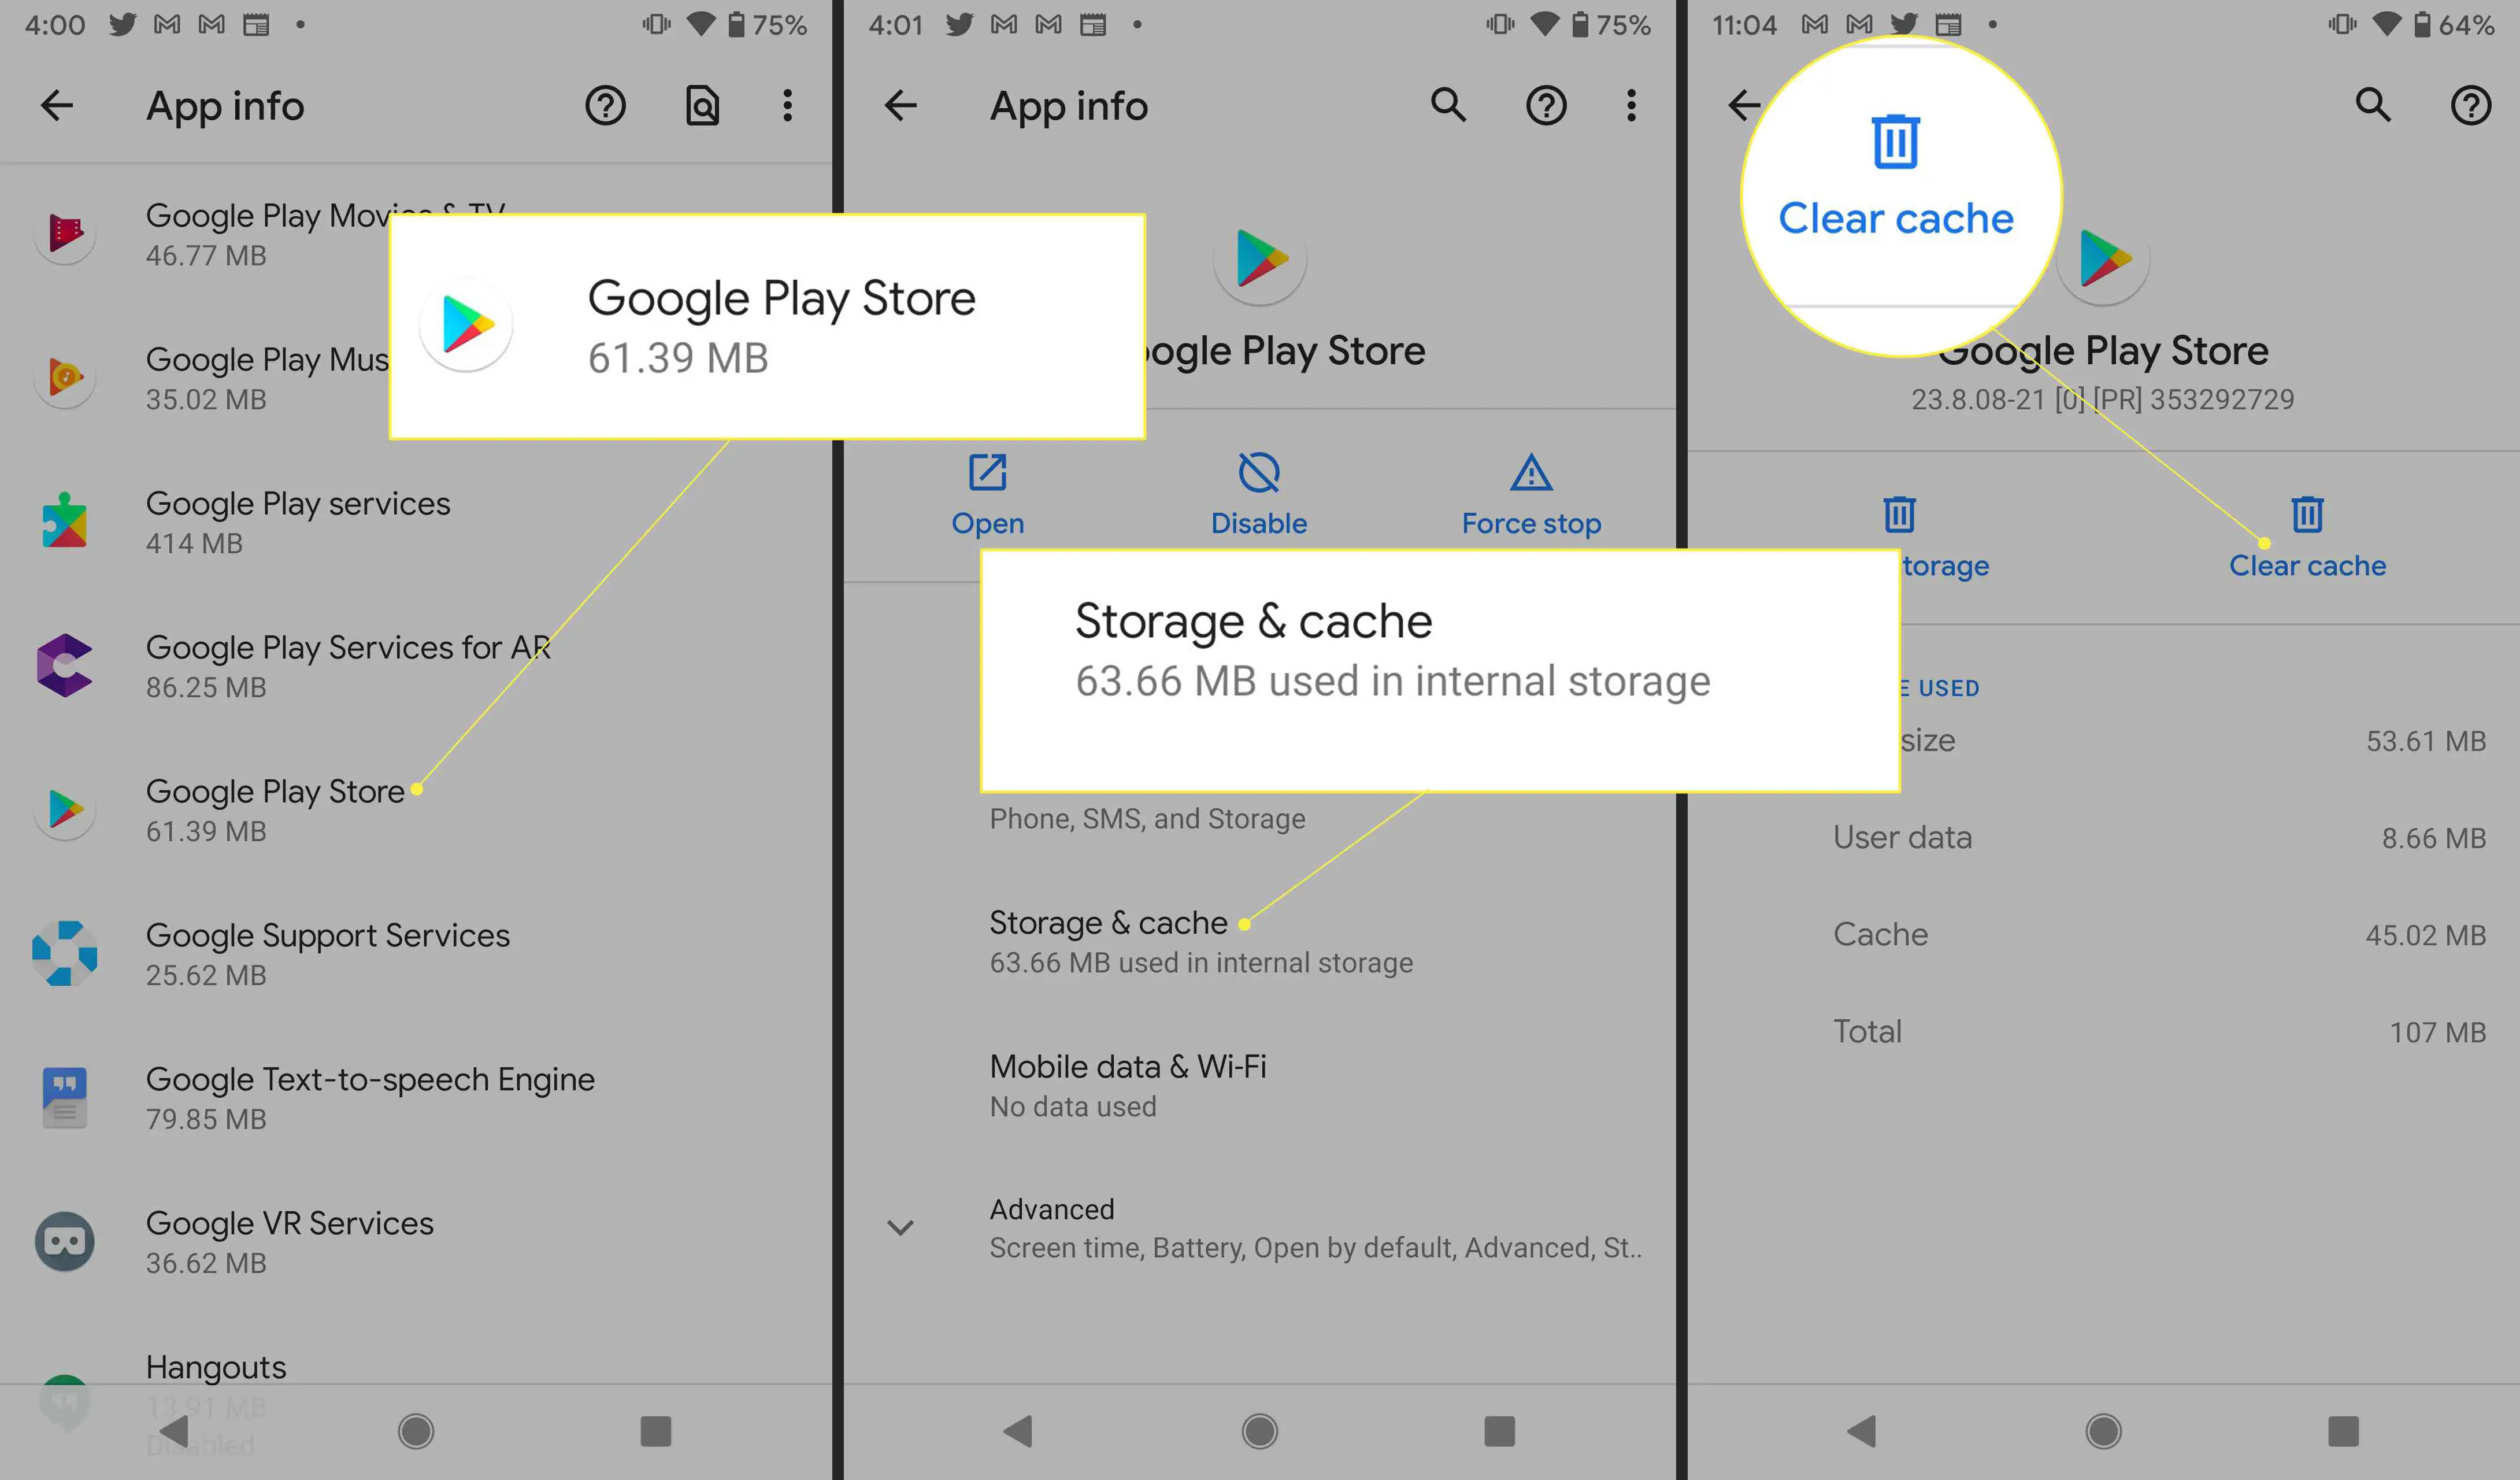 Configurações do Android com "Google Play Store", "Armazenamento e cache" e "Limpar cache" destacados